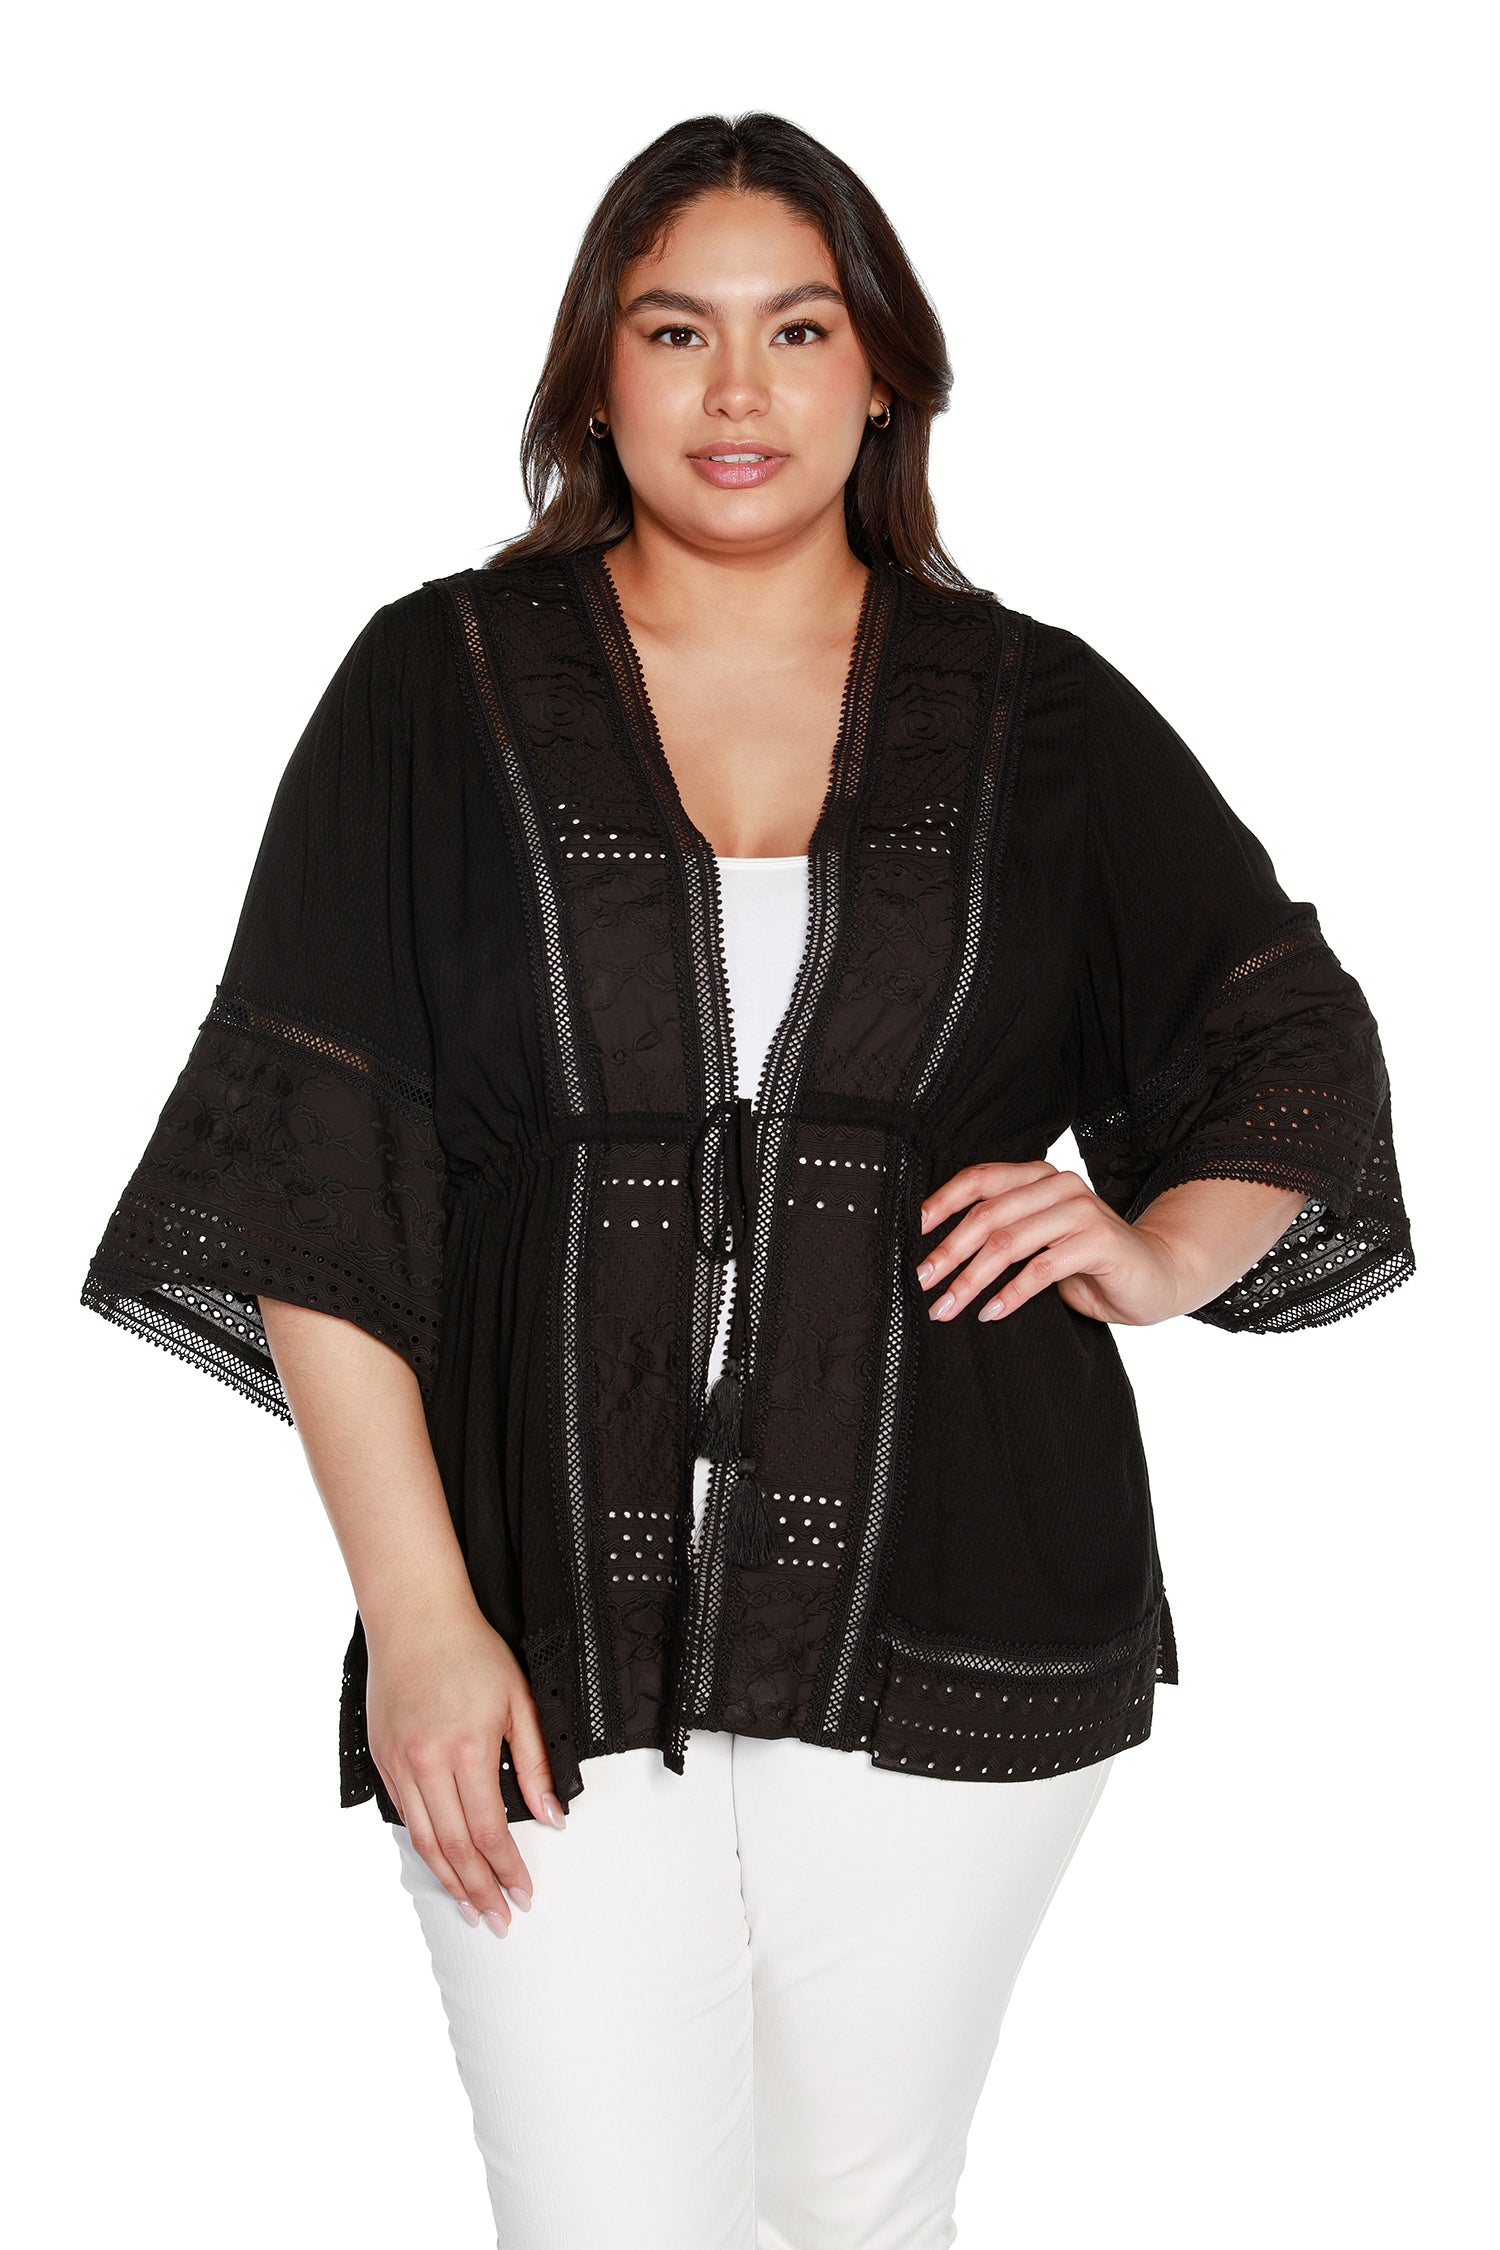 Kimono de algodón para mujer con encaje y bordado con ojales | con curvas